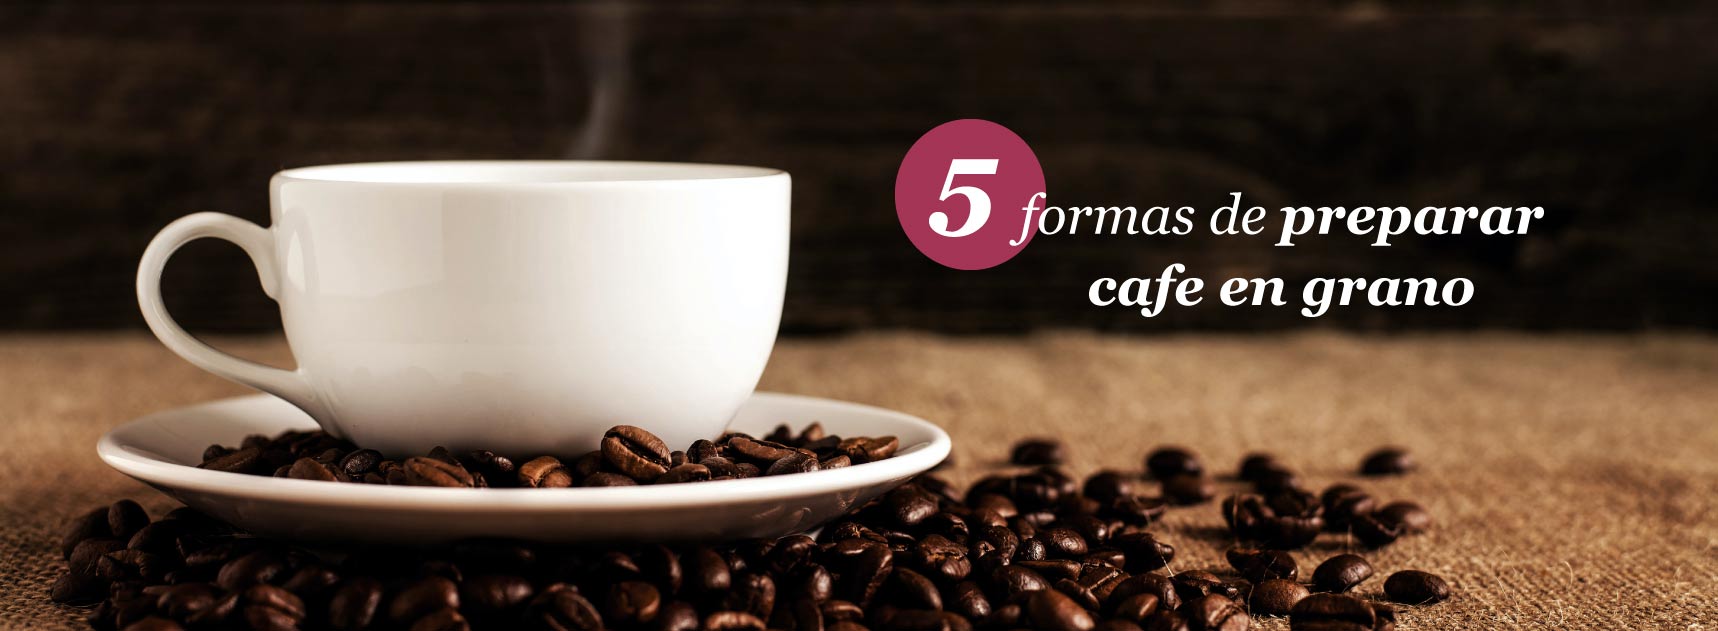 5 formas de preparar café en grano